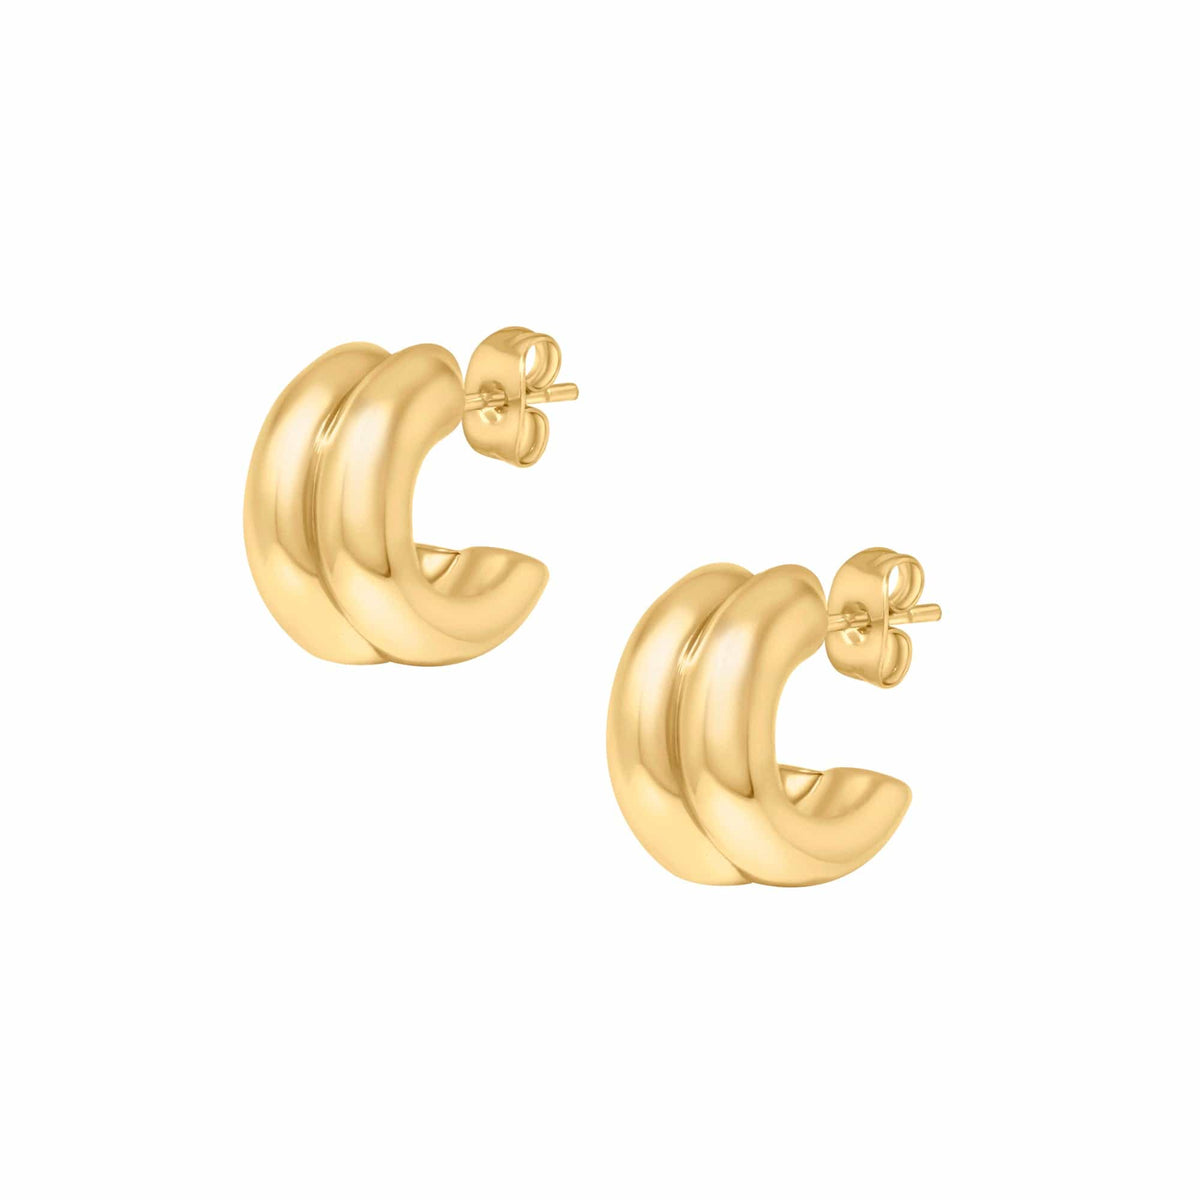 BOHOMOON Stainless Steel Juliana Hoop Earrings Gold